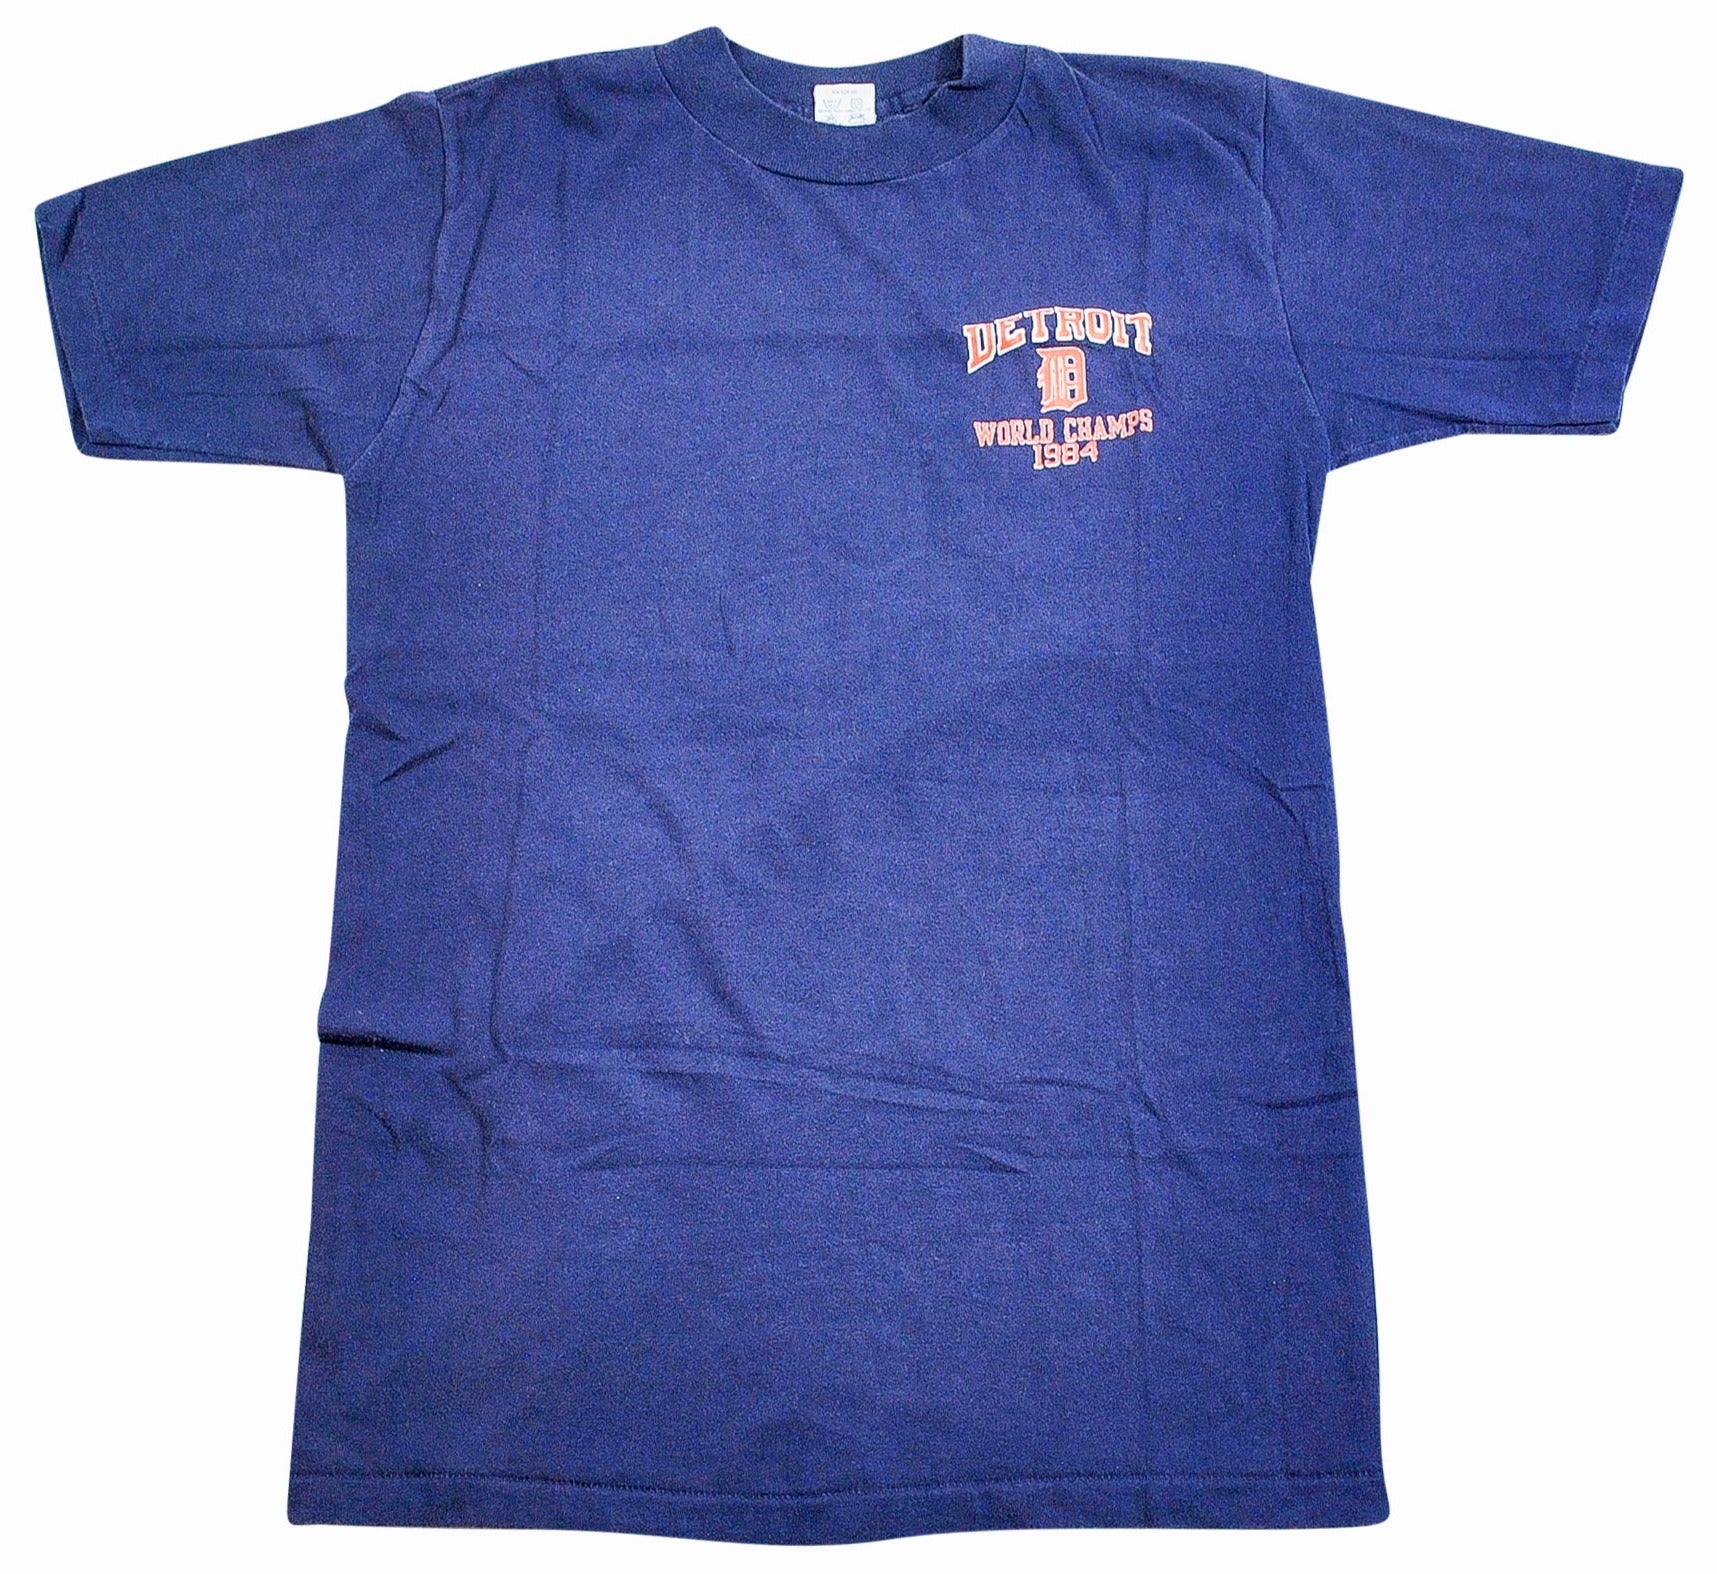 c.1984 World Series Champions Detroit t-shirt — LE VIF